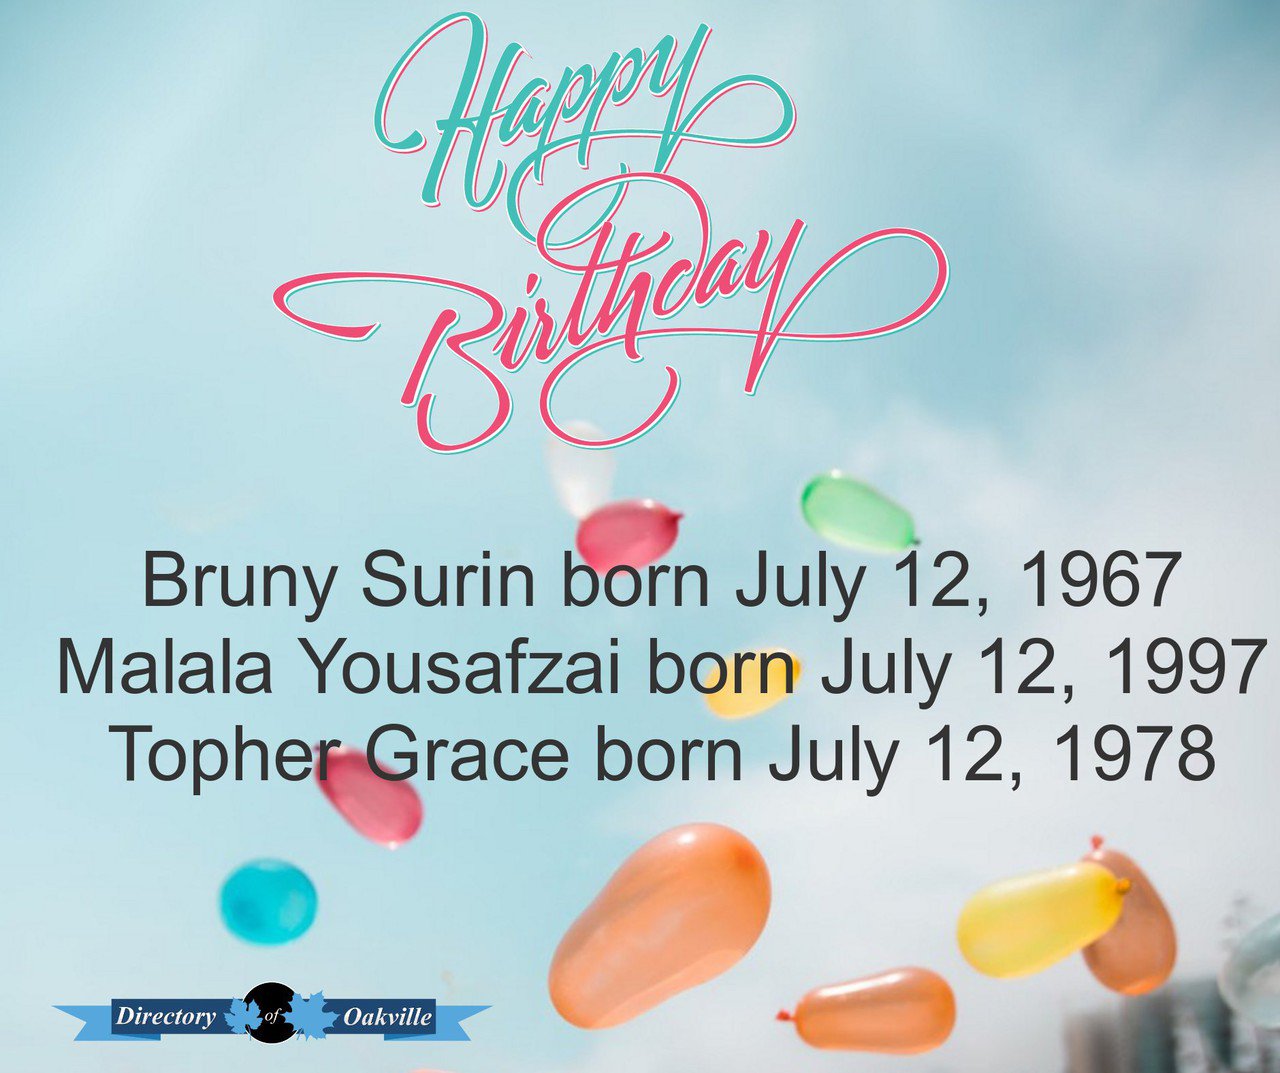 Happy Birthday!
Bruny Surin born July 12, 1967
Malala Yousafzai born July 12, 1997
Topher Grace born July 12, 1978 